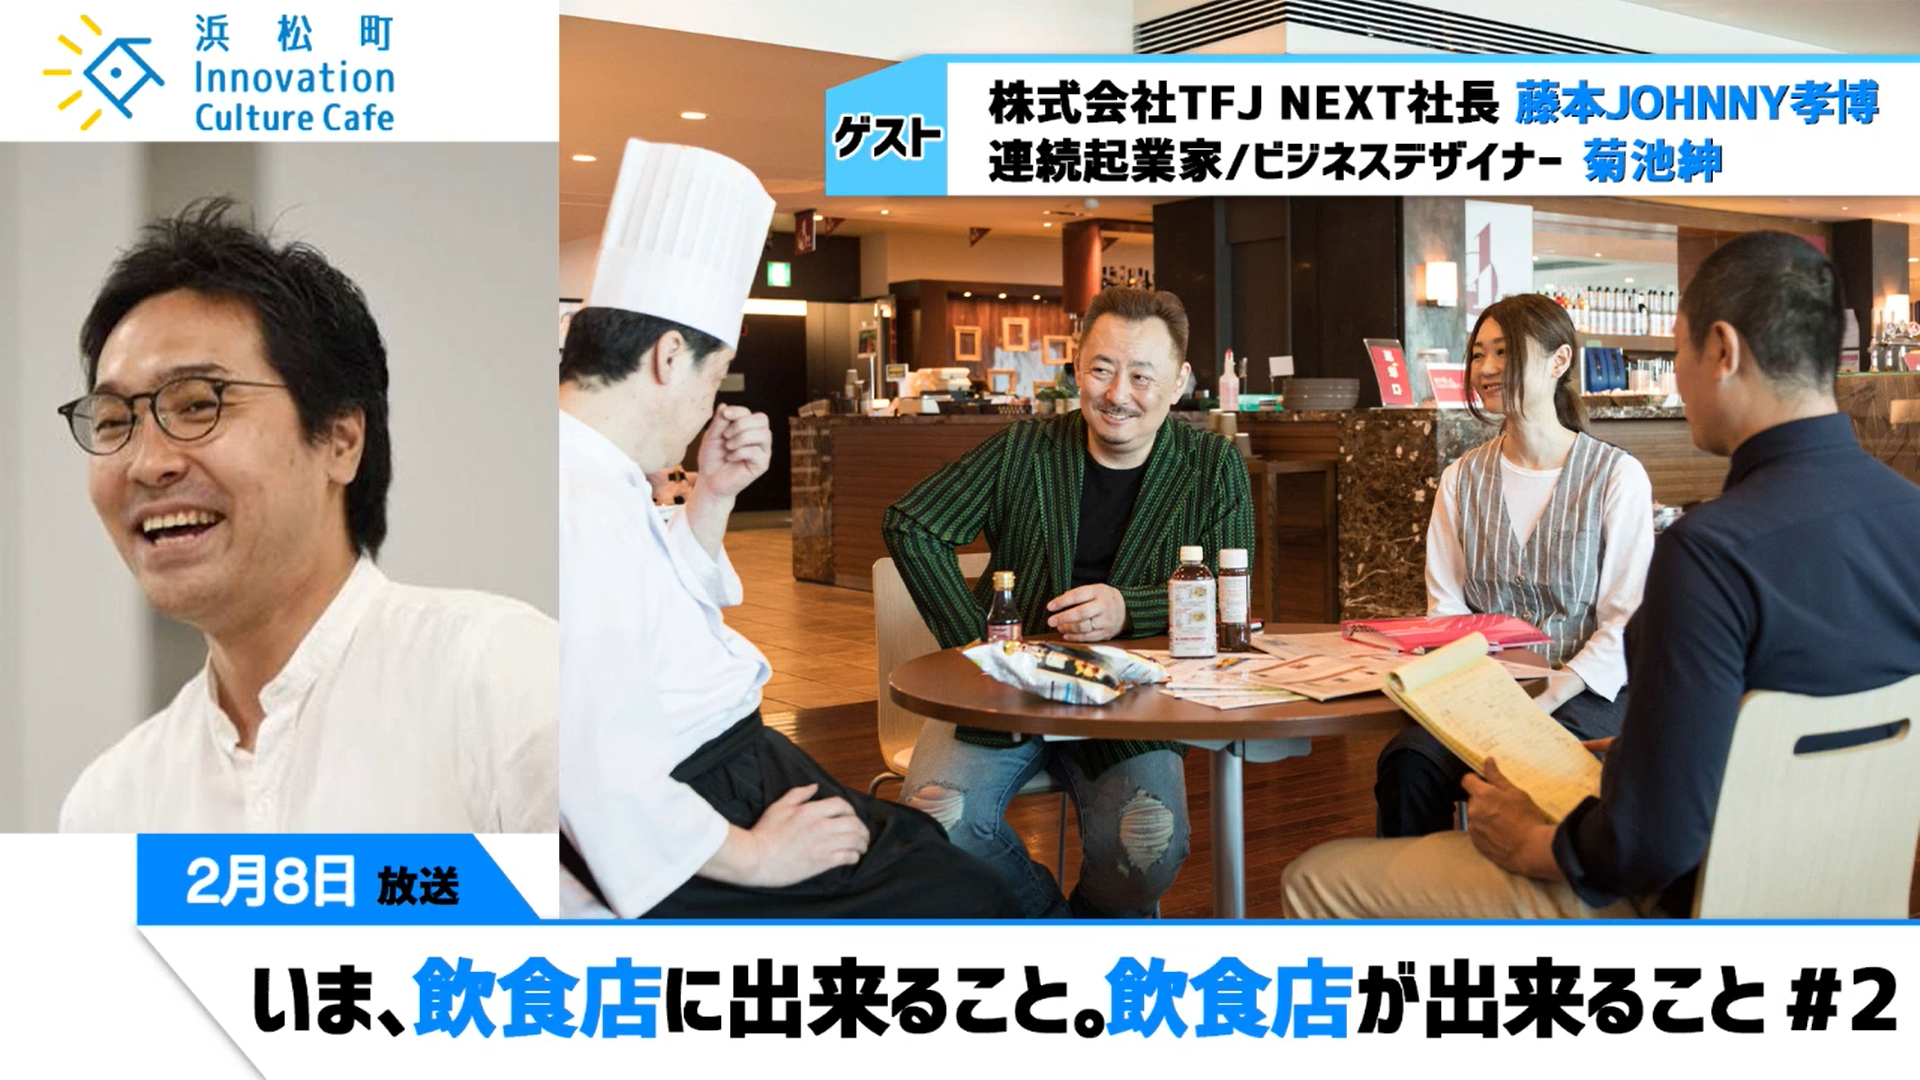 いま、飲食店に出来ること。飲食店が出来ること。#2『浜松町Innovation Culture Cafe』